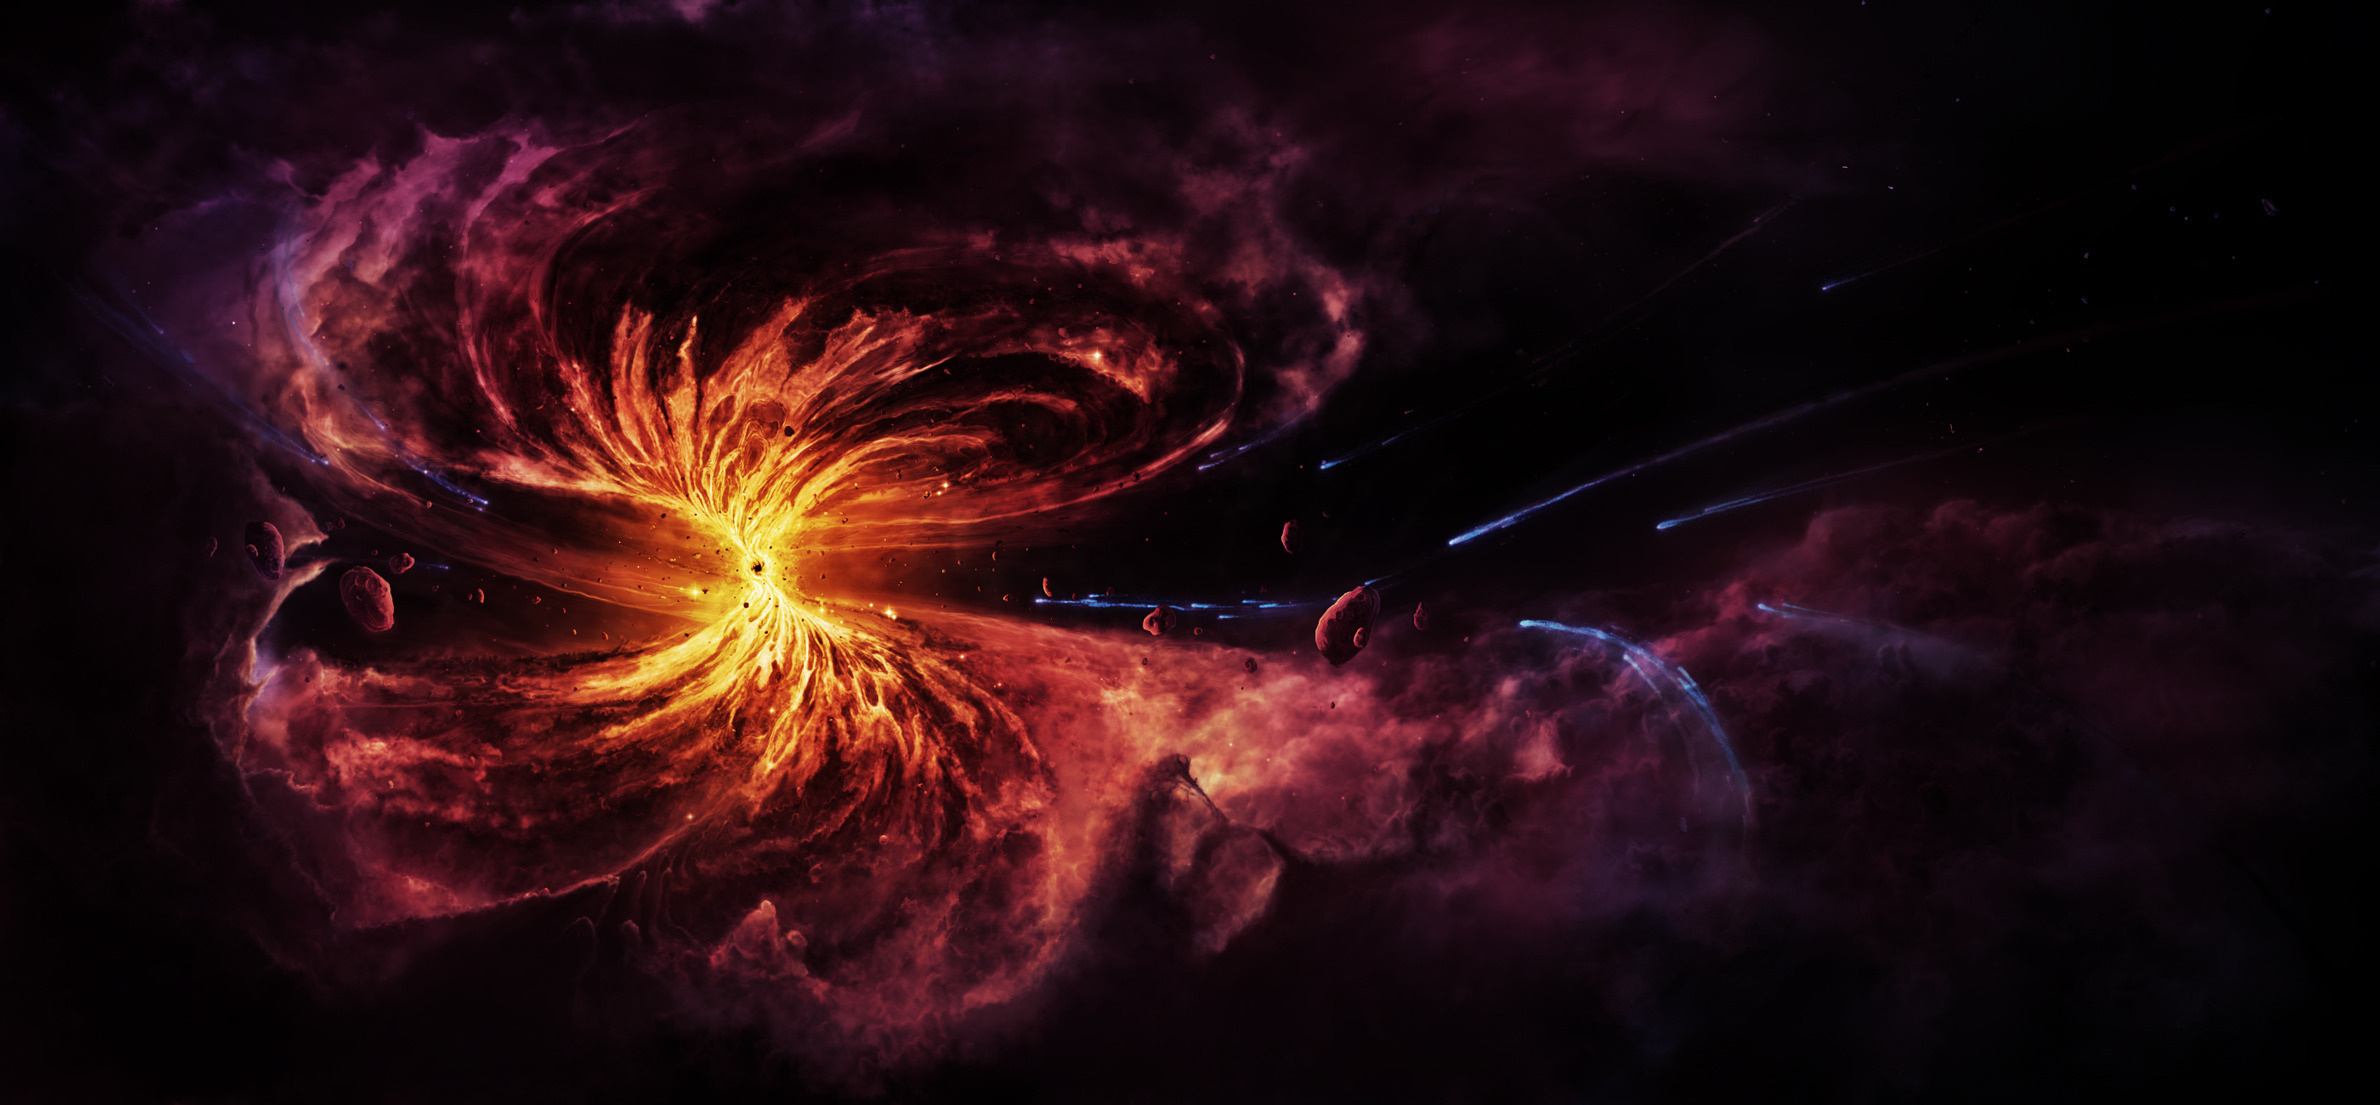 Interstellar black hole wallpaper